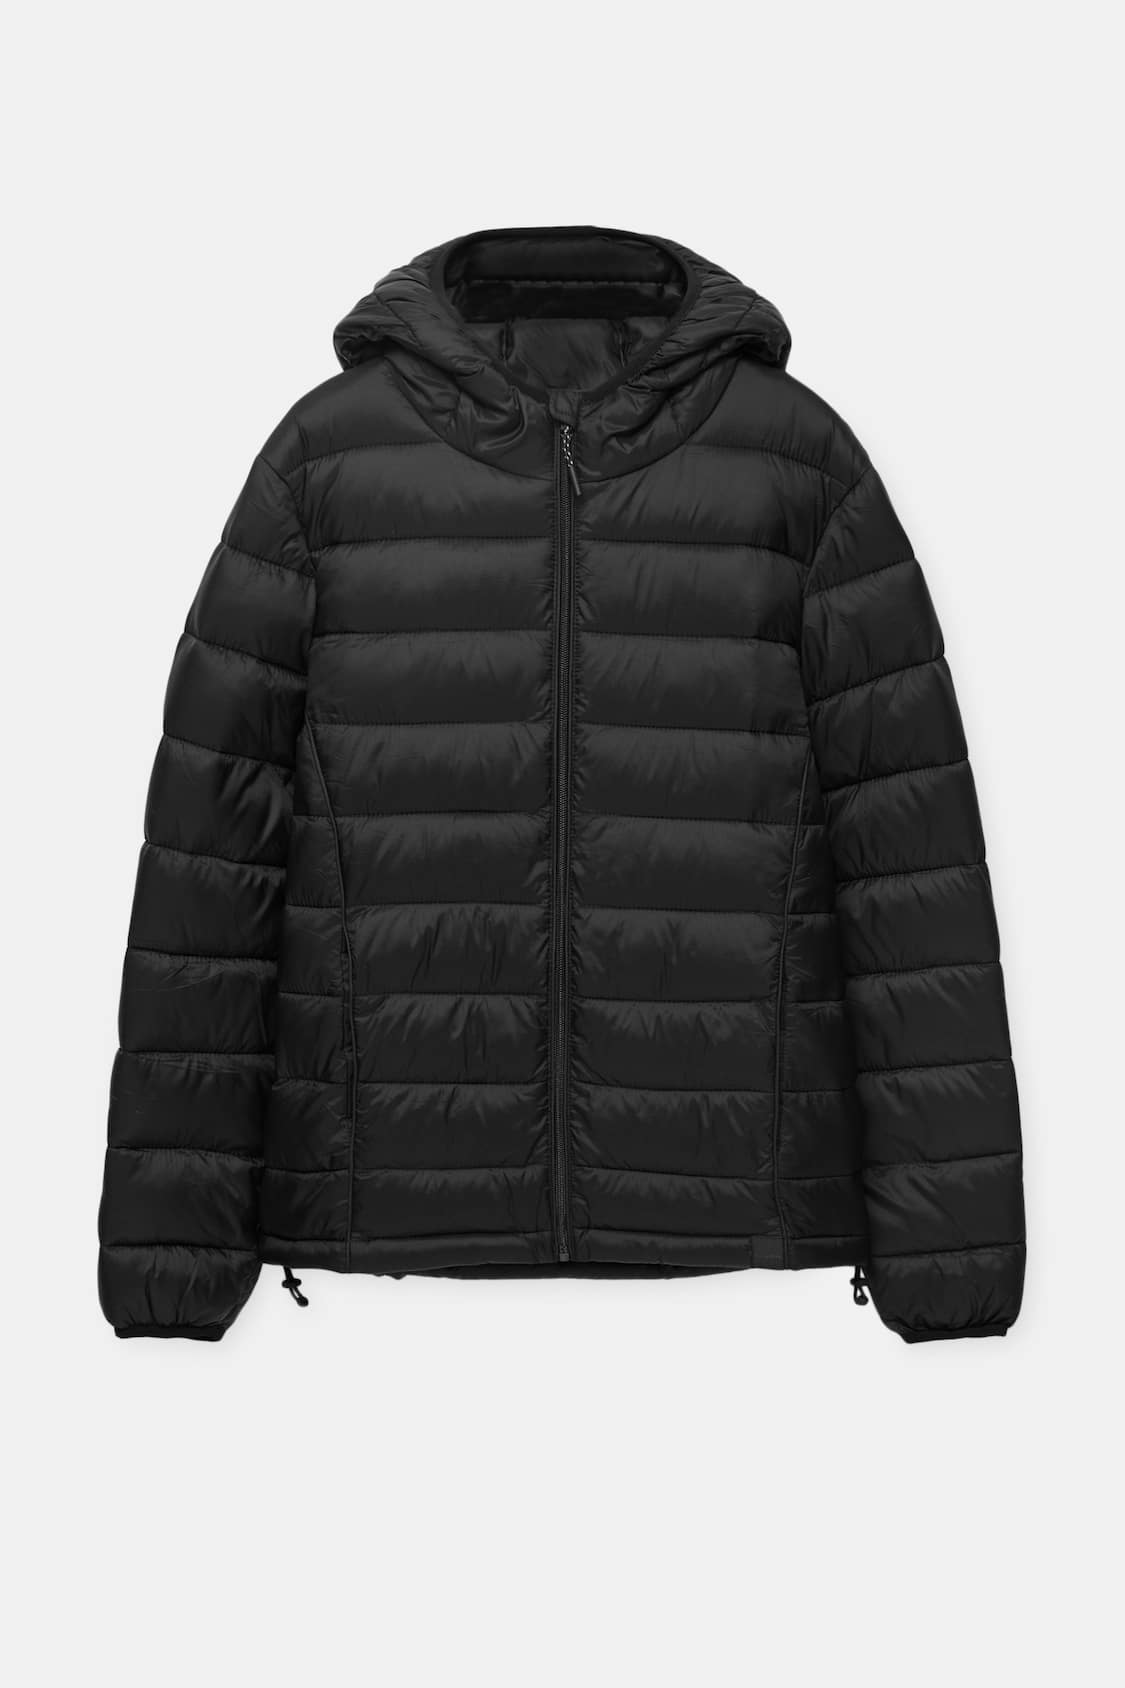 Lightweight puffer jacket with hood